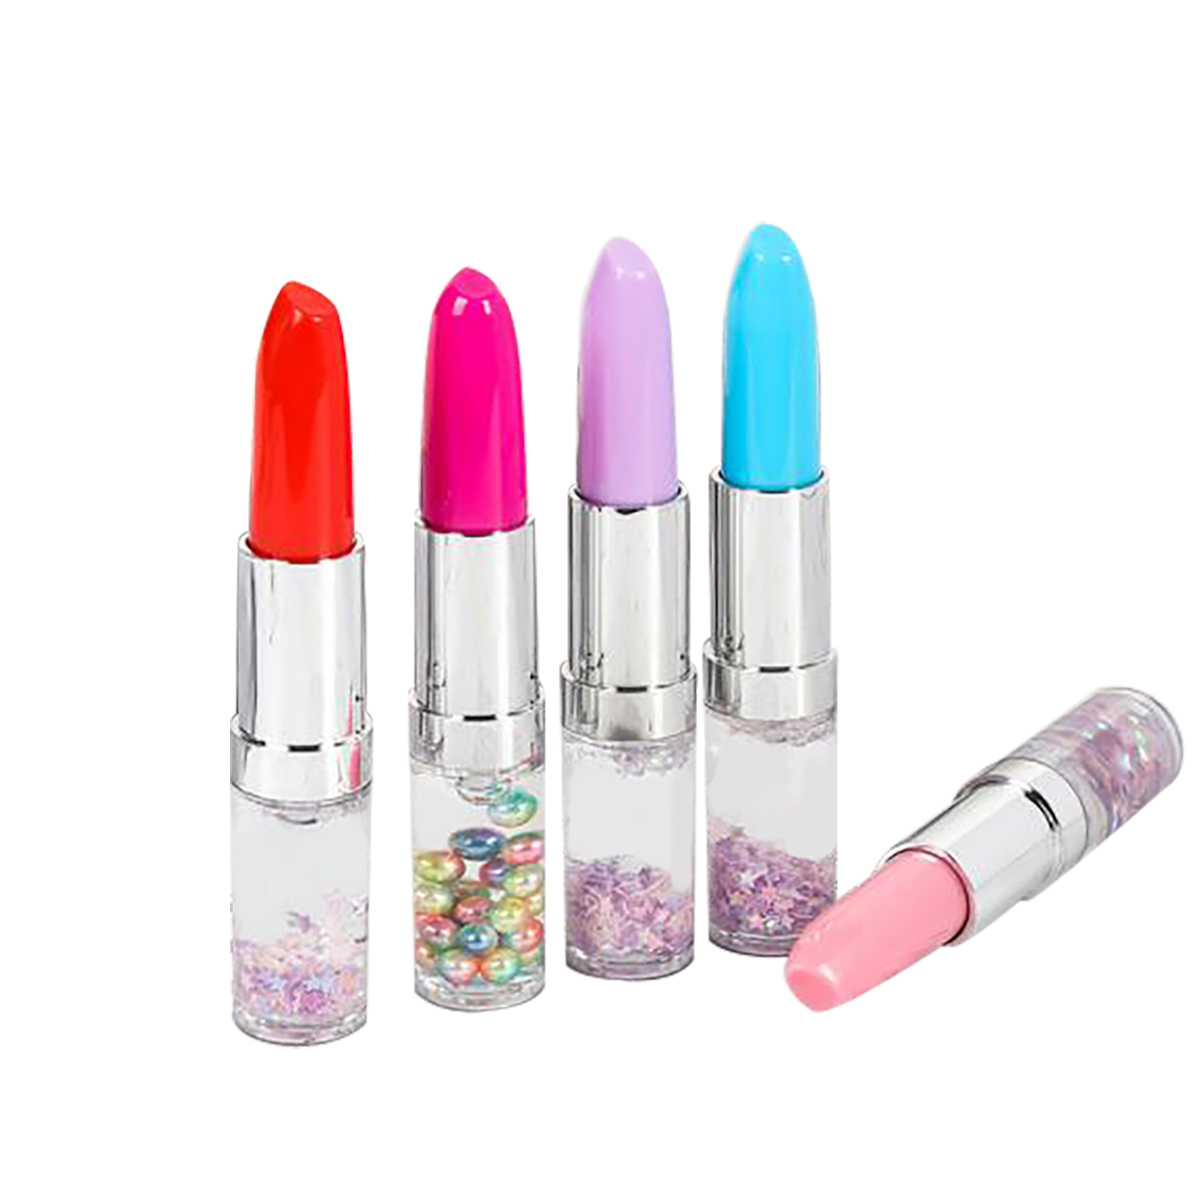 GL-ELY1320 Lipstick Shape Ballpen